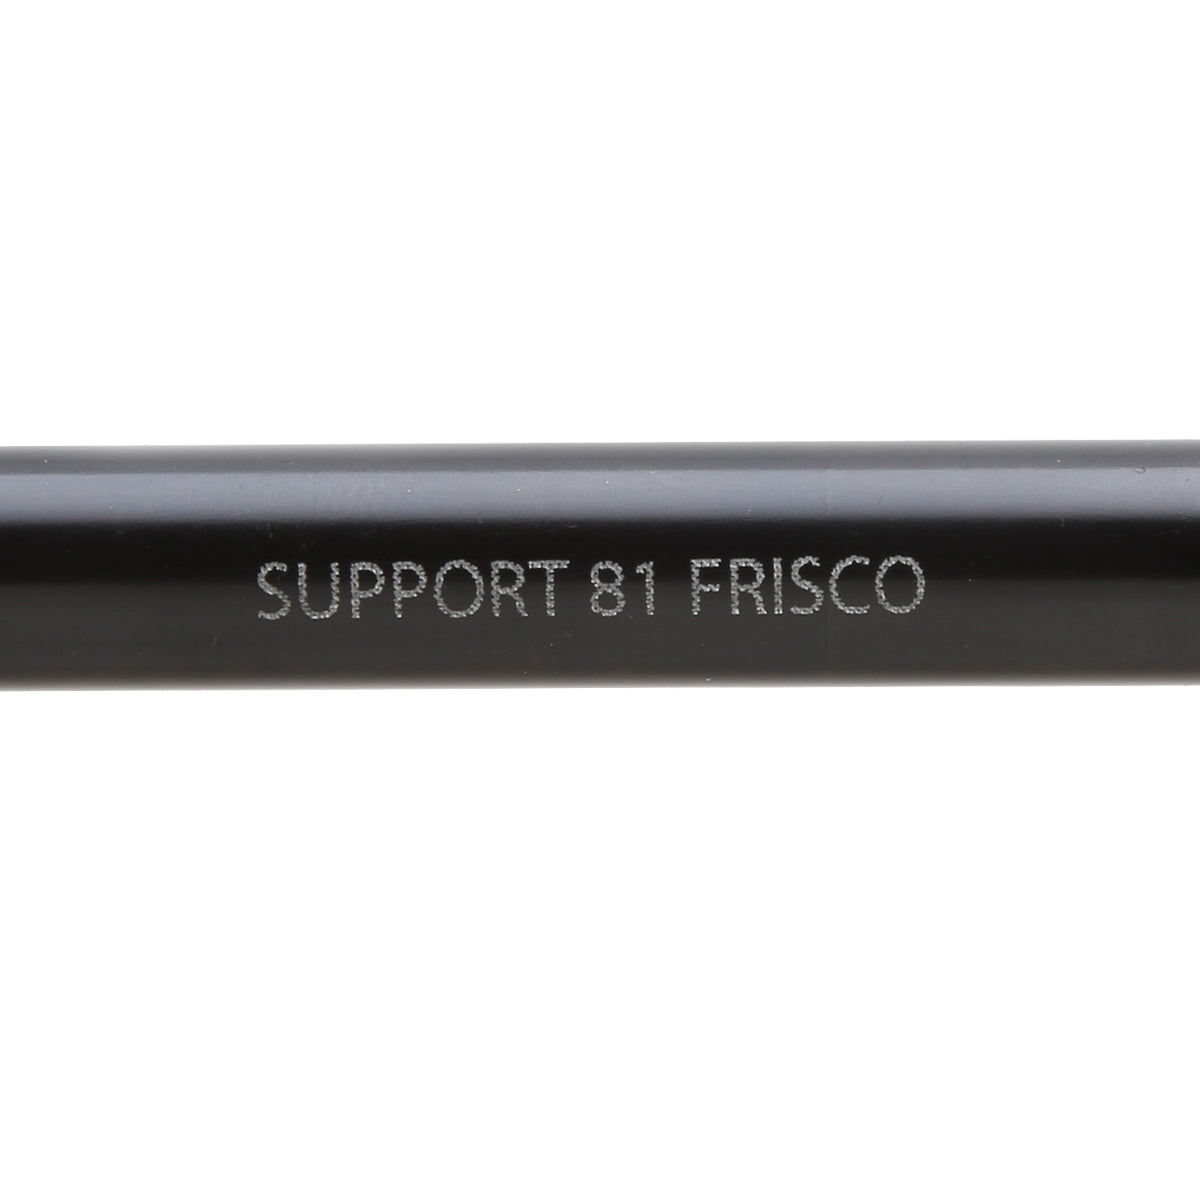 Saddlebag Stabilizer - Support 81 Frisco